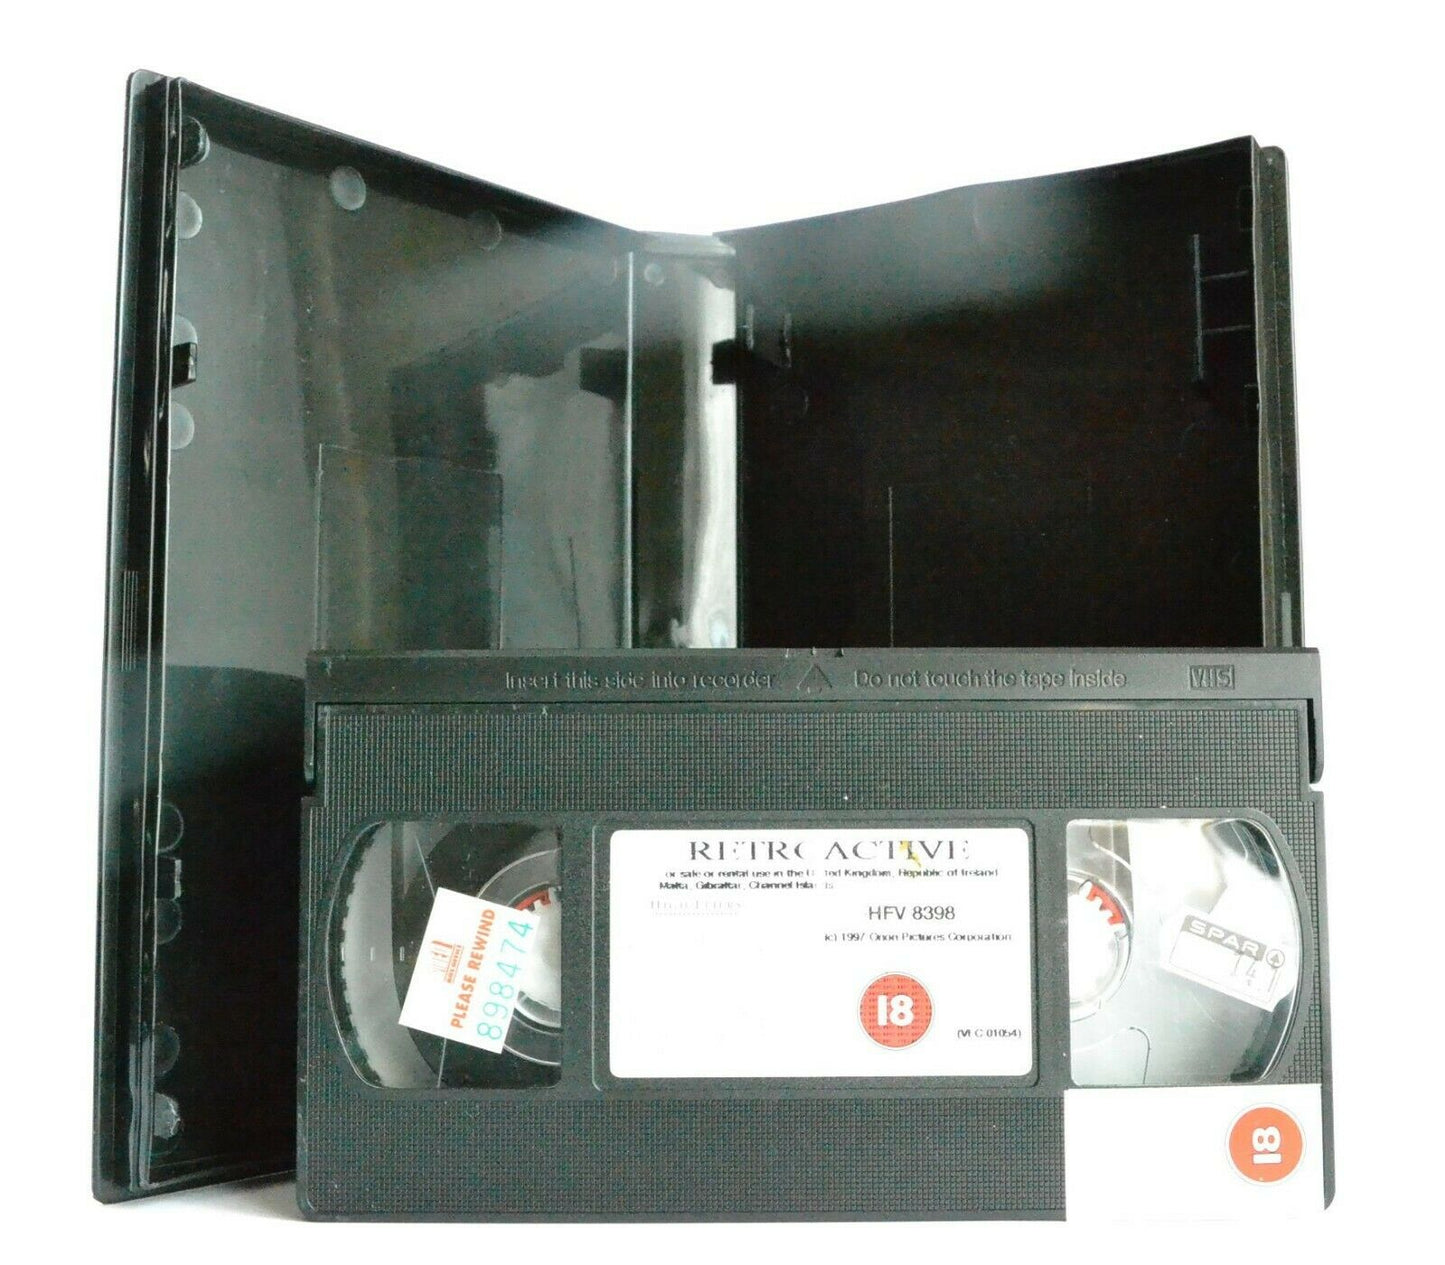 Retroactive: J.Belushi/K.Travis - Sci-Fi (1997) - Large Box - Ex-Rental - VHS-